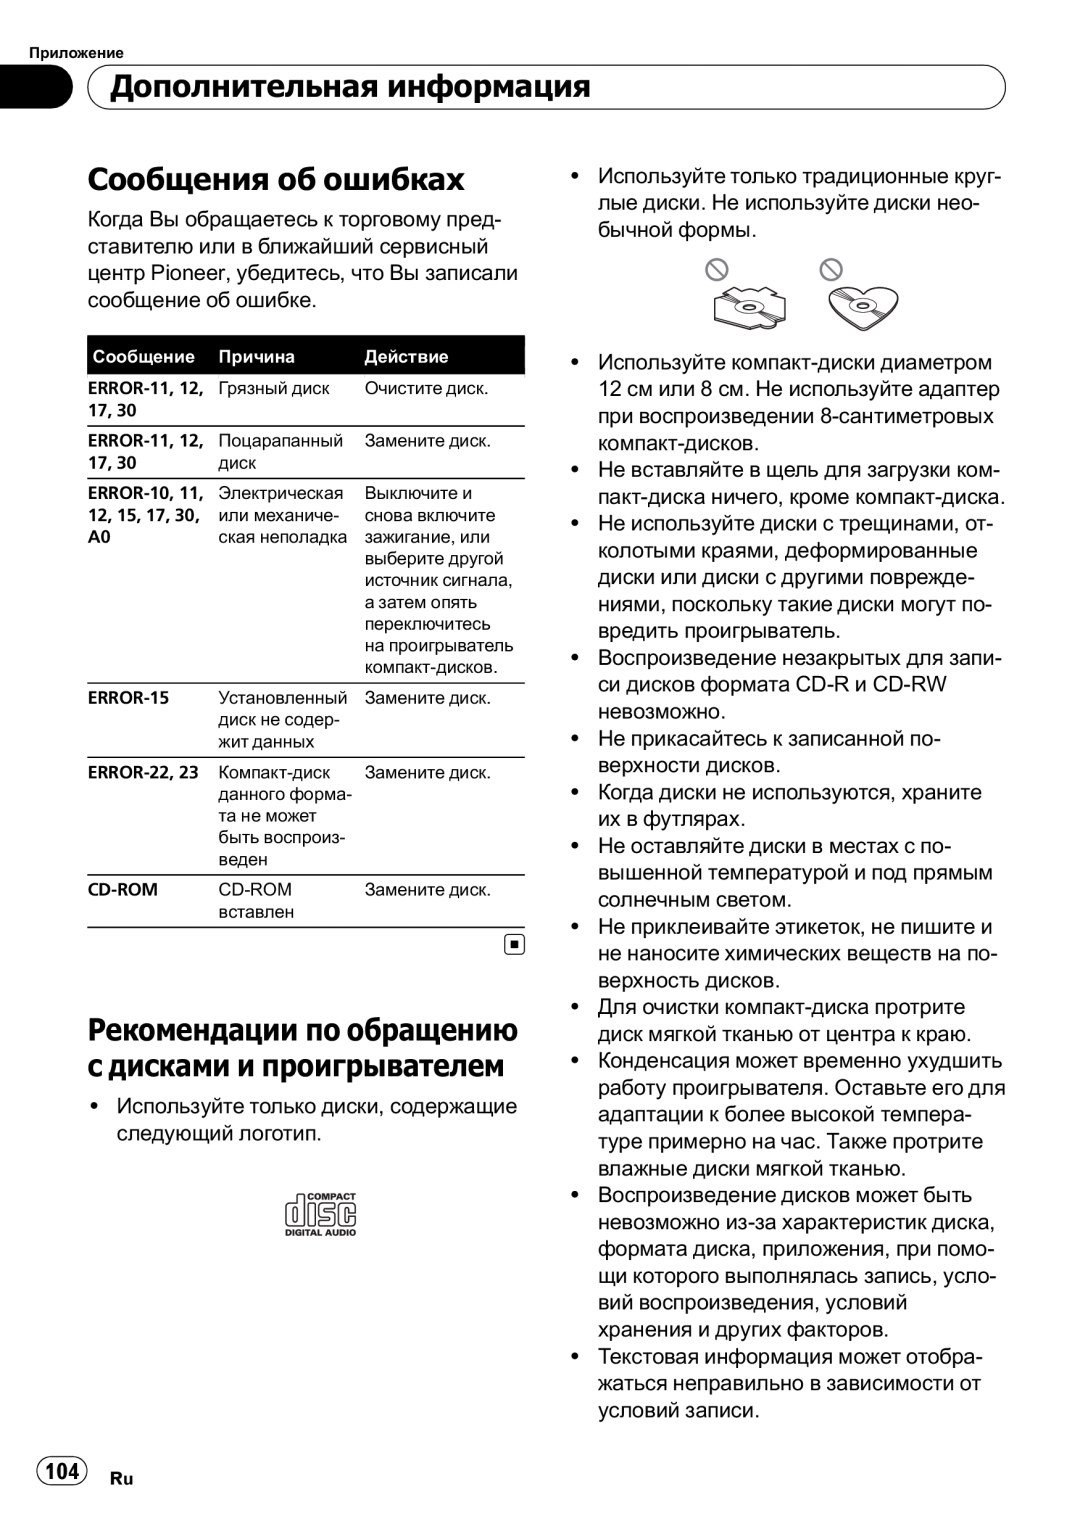 Pioneer DEH-1020E, DEH-1000E operation manual Дополнительная информация, Сообщения об ошибках, 104 Ru 